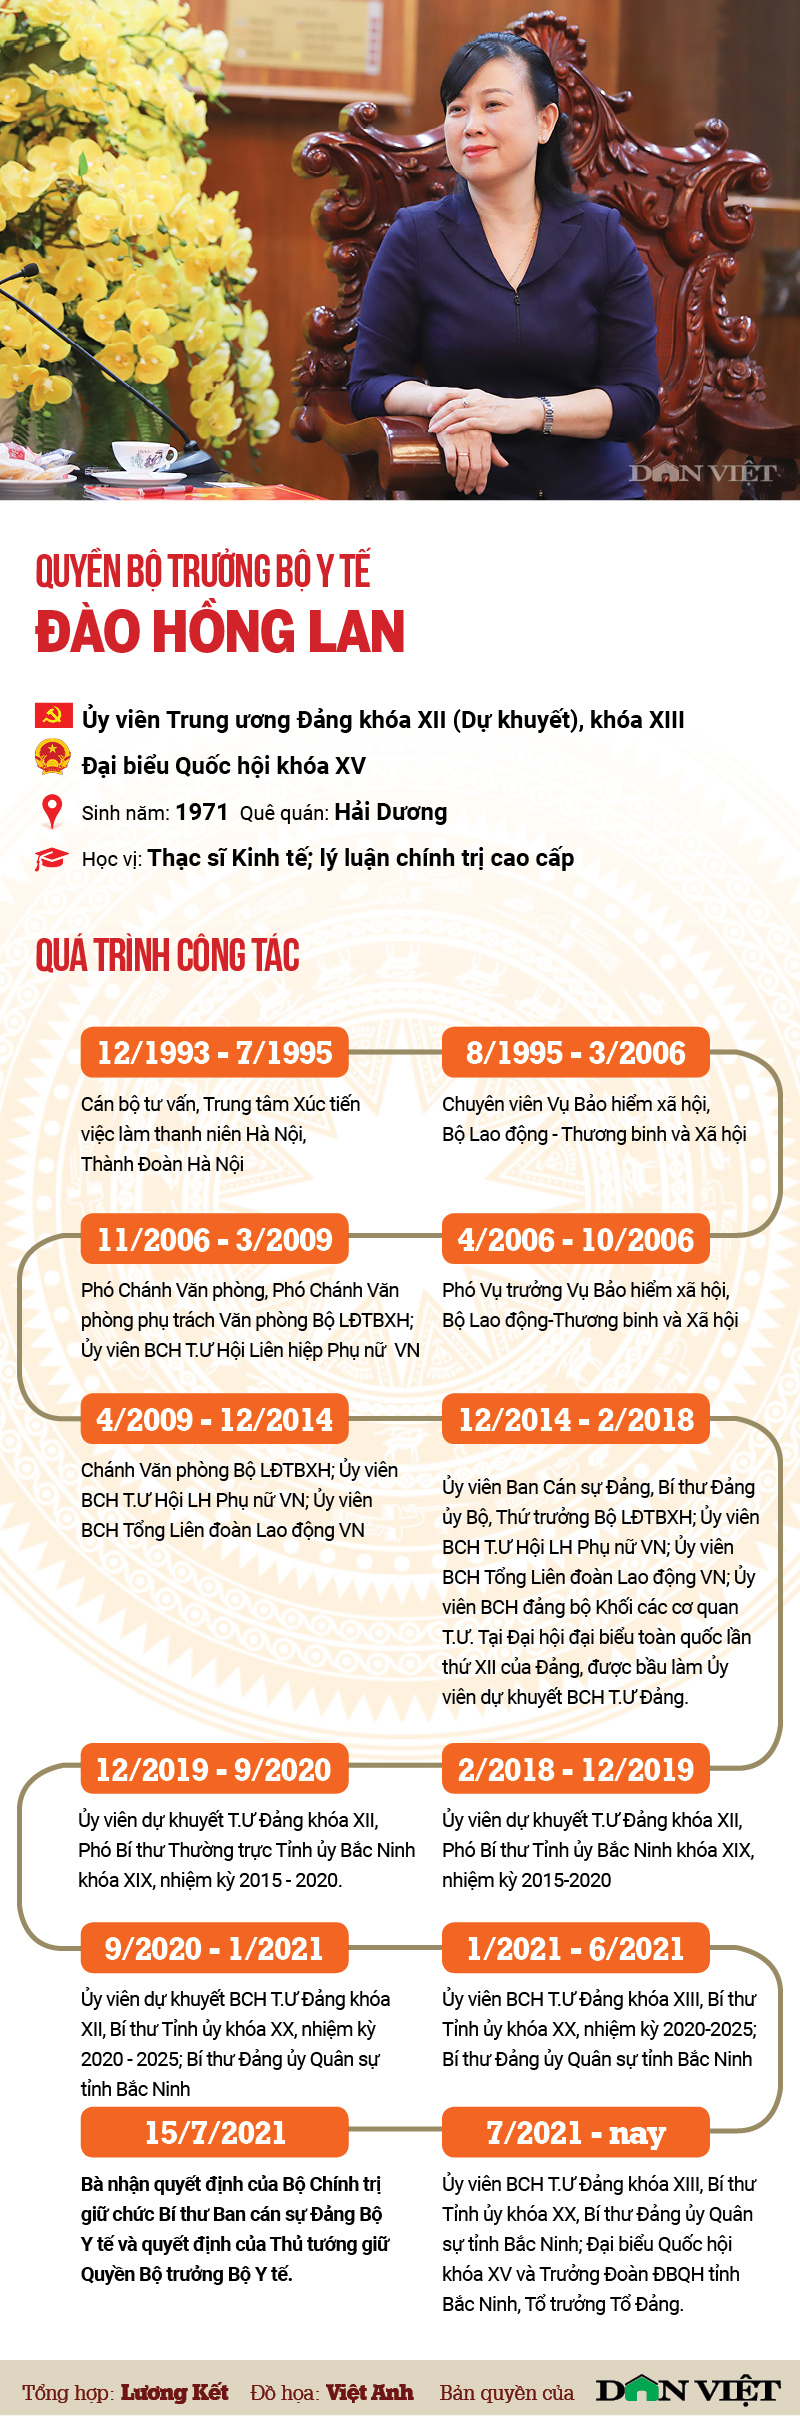 Infographic chân dung Quyền Bộ trưởng Bộ Y tế Đào Hồng Lan - Ảnh 1.